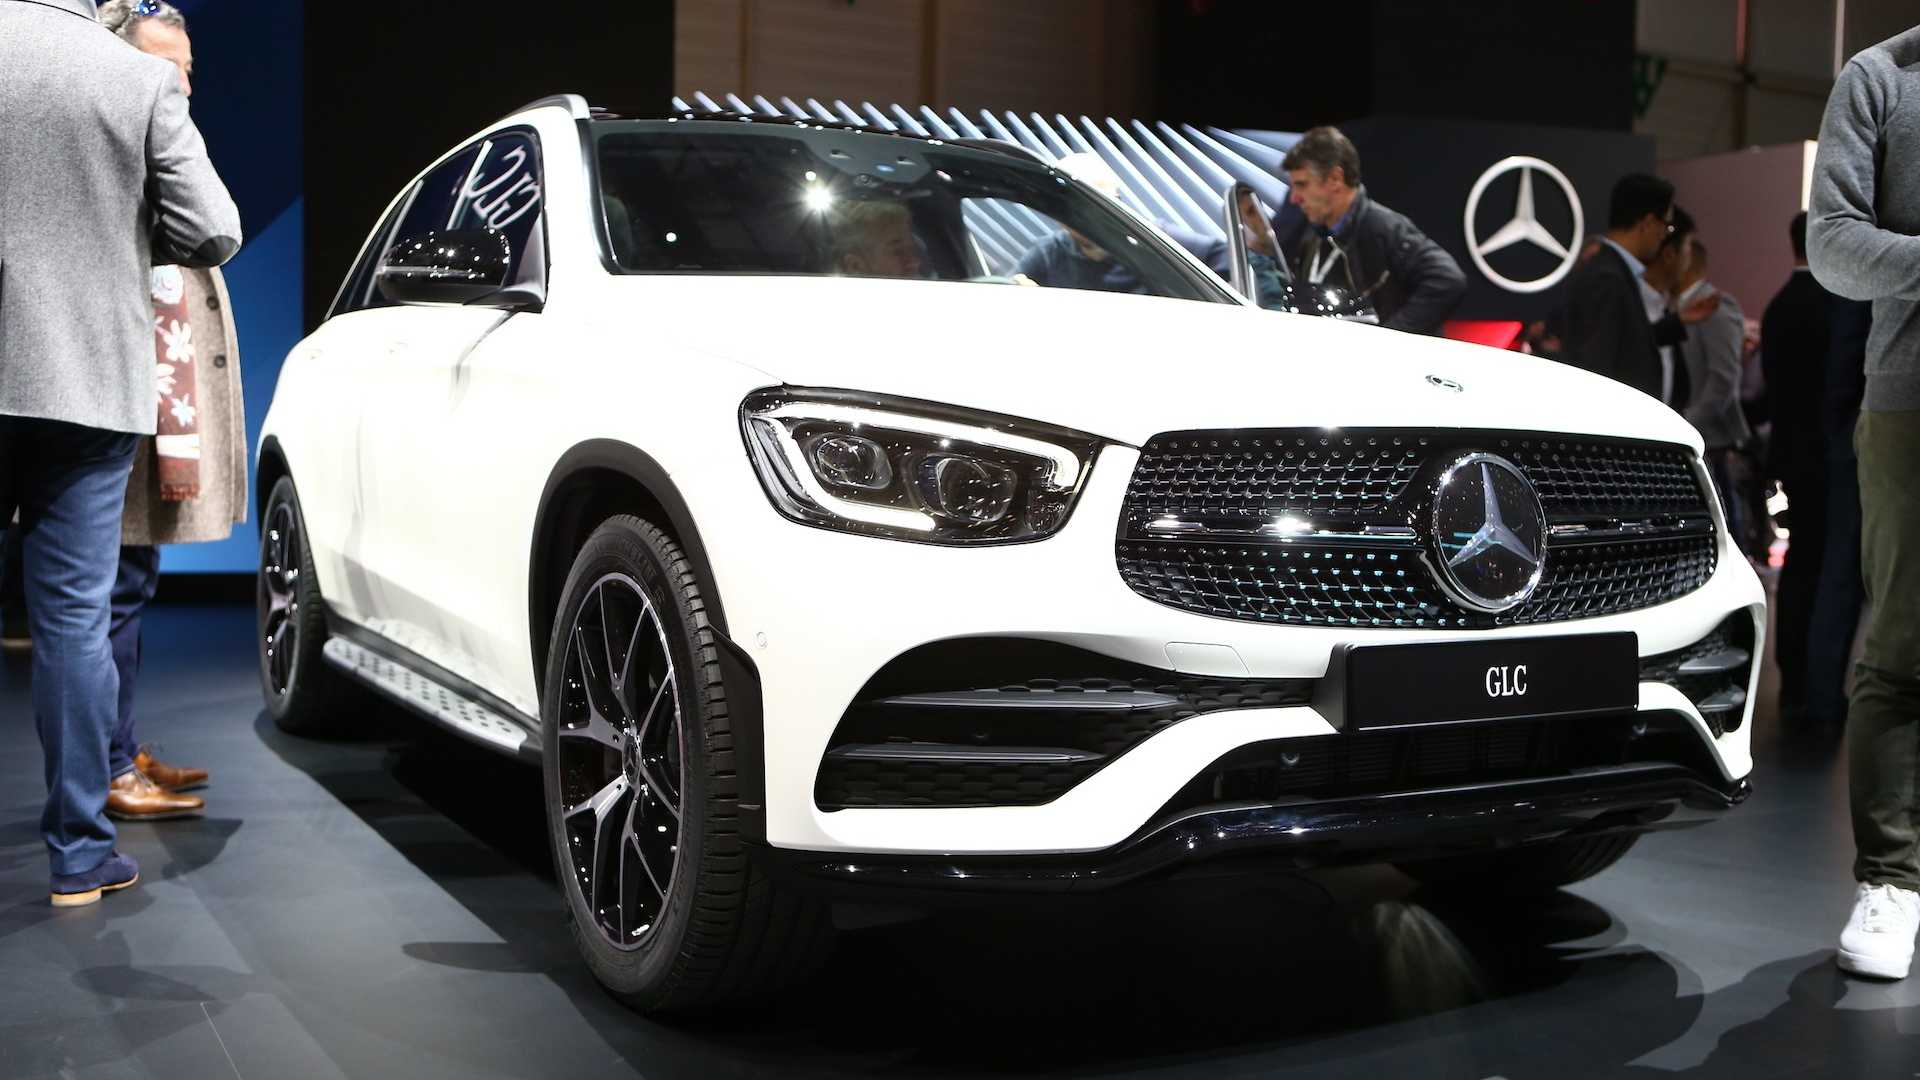 2020 MercedesBenz GLC "Facelift" Revealed • neoAdviser